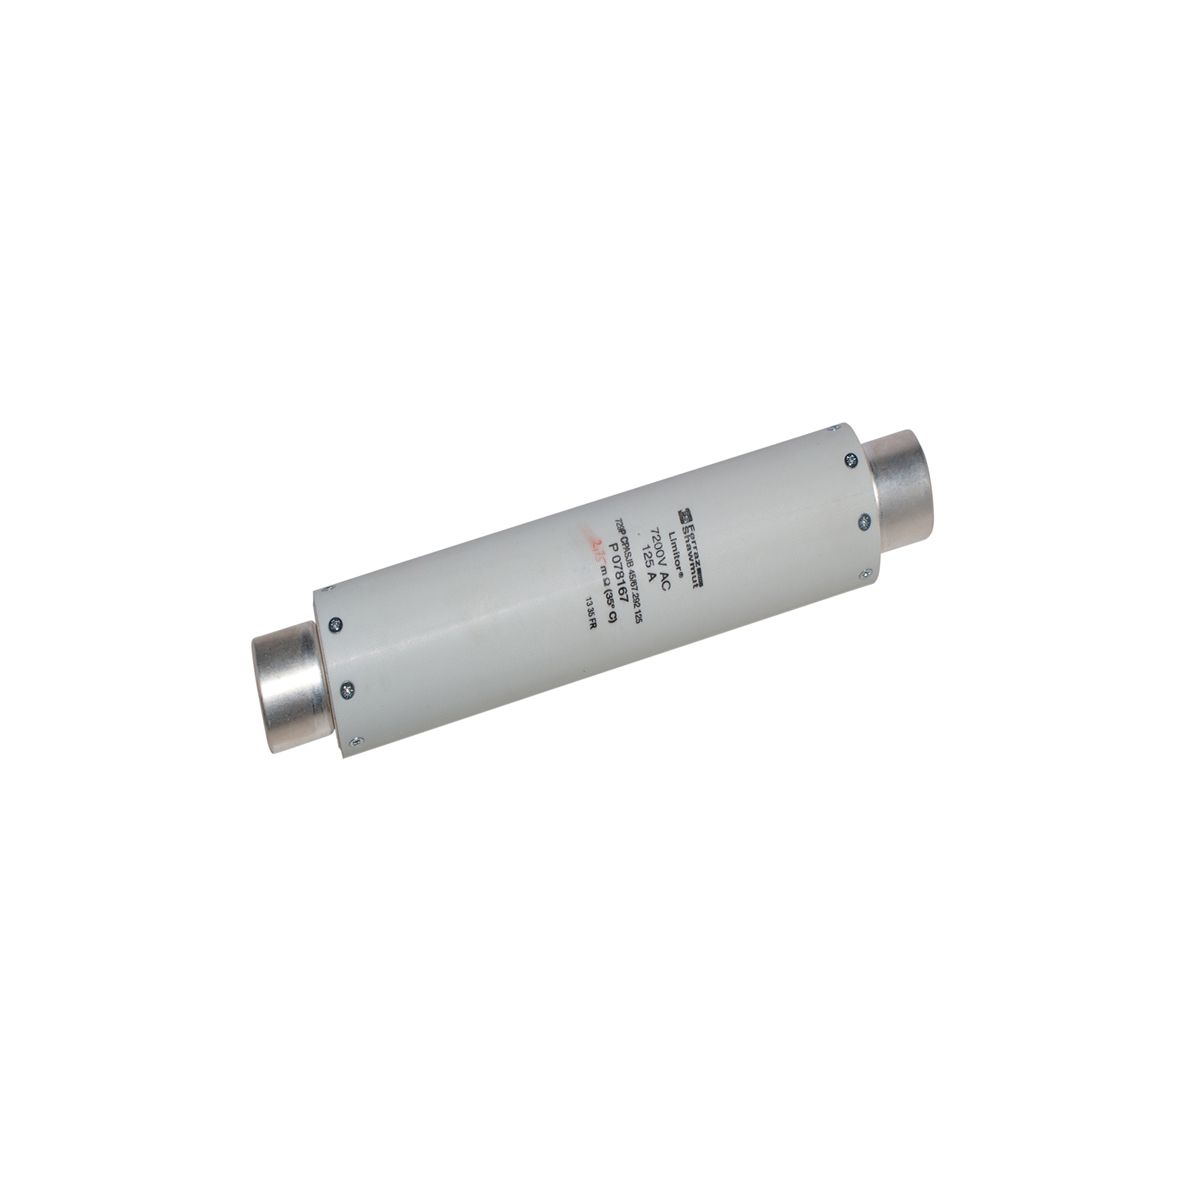 P078167 - DIN 43625 fuse for HV motor, IEC 60644, 292mm, 45mm, striker 50N, 7,2kV, 125A